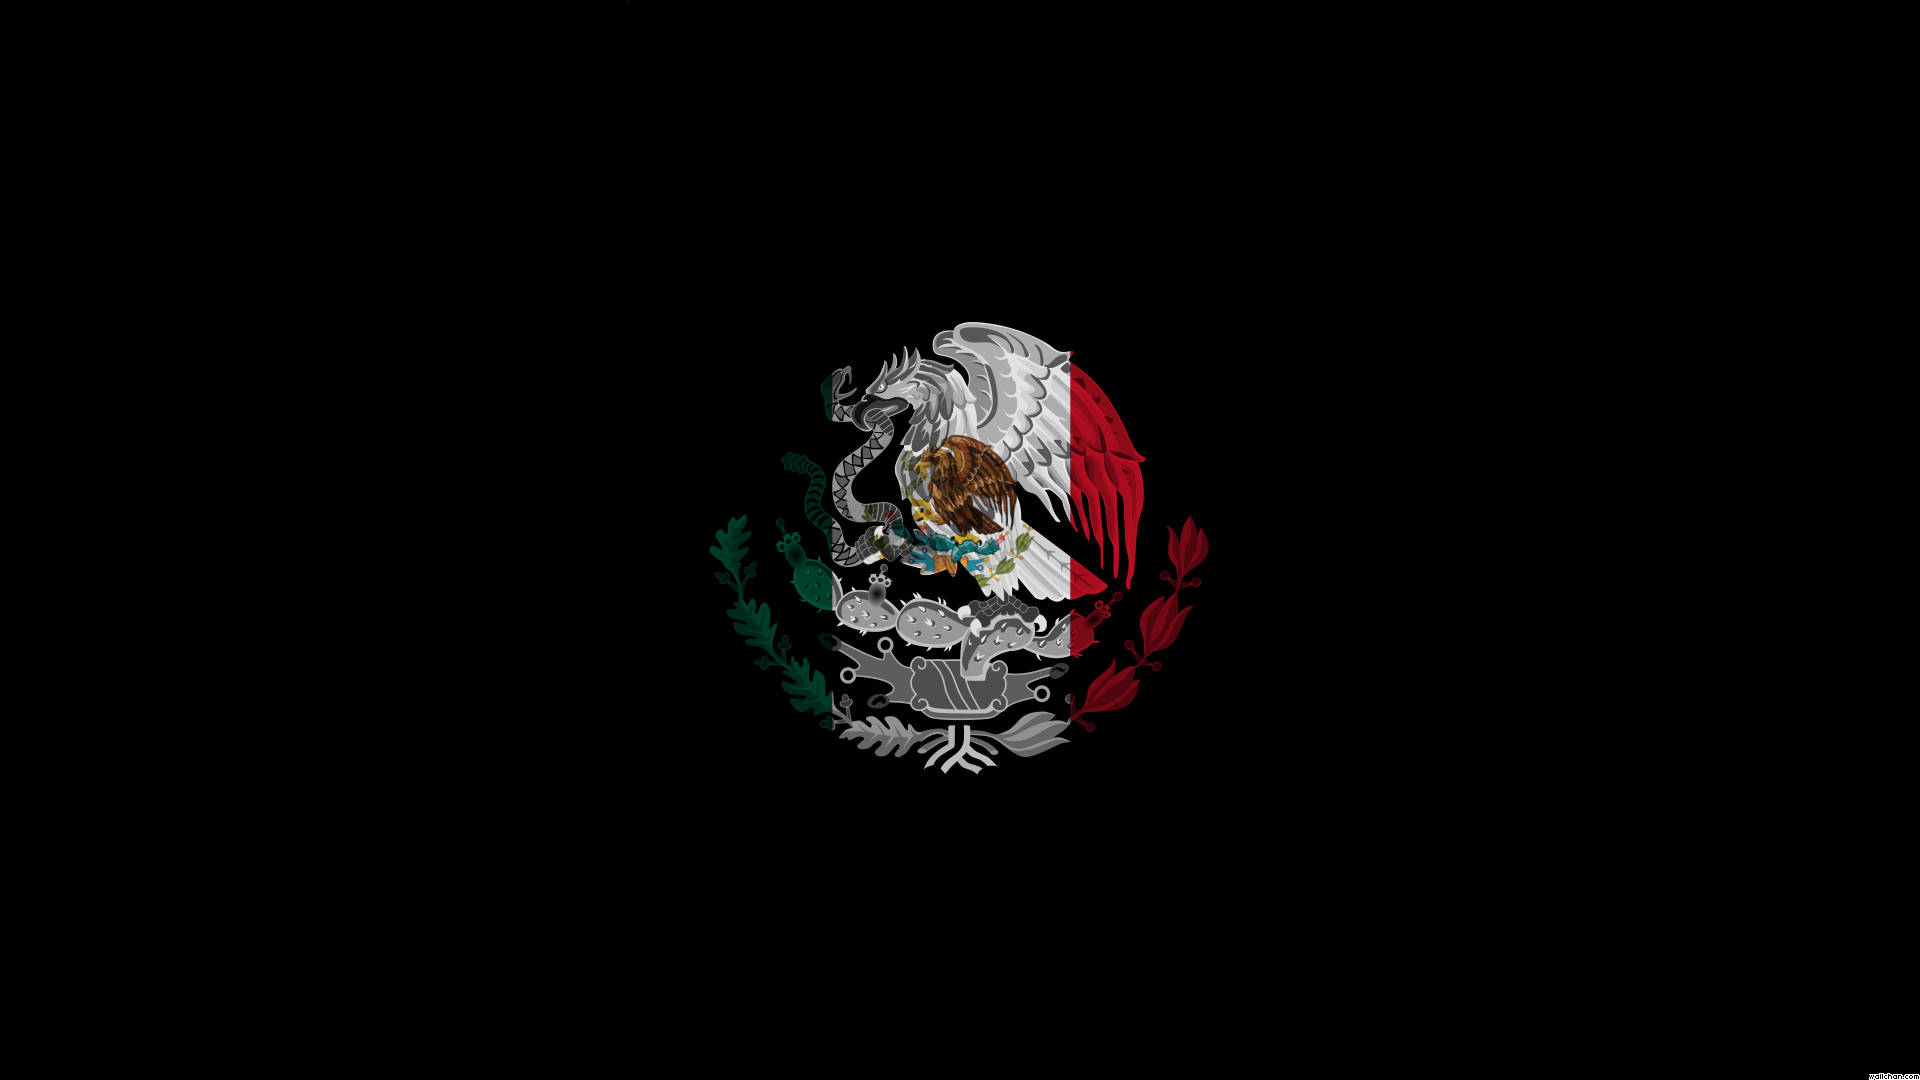 Golden Eagle Of Mexico Flag Wallpaper